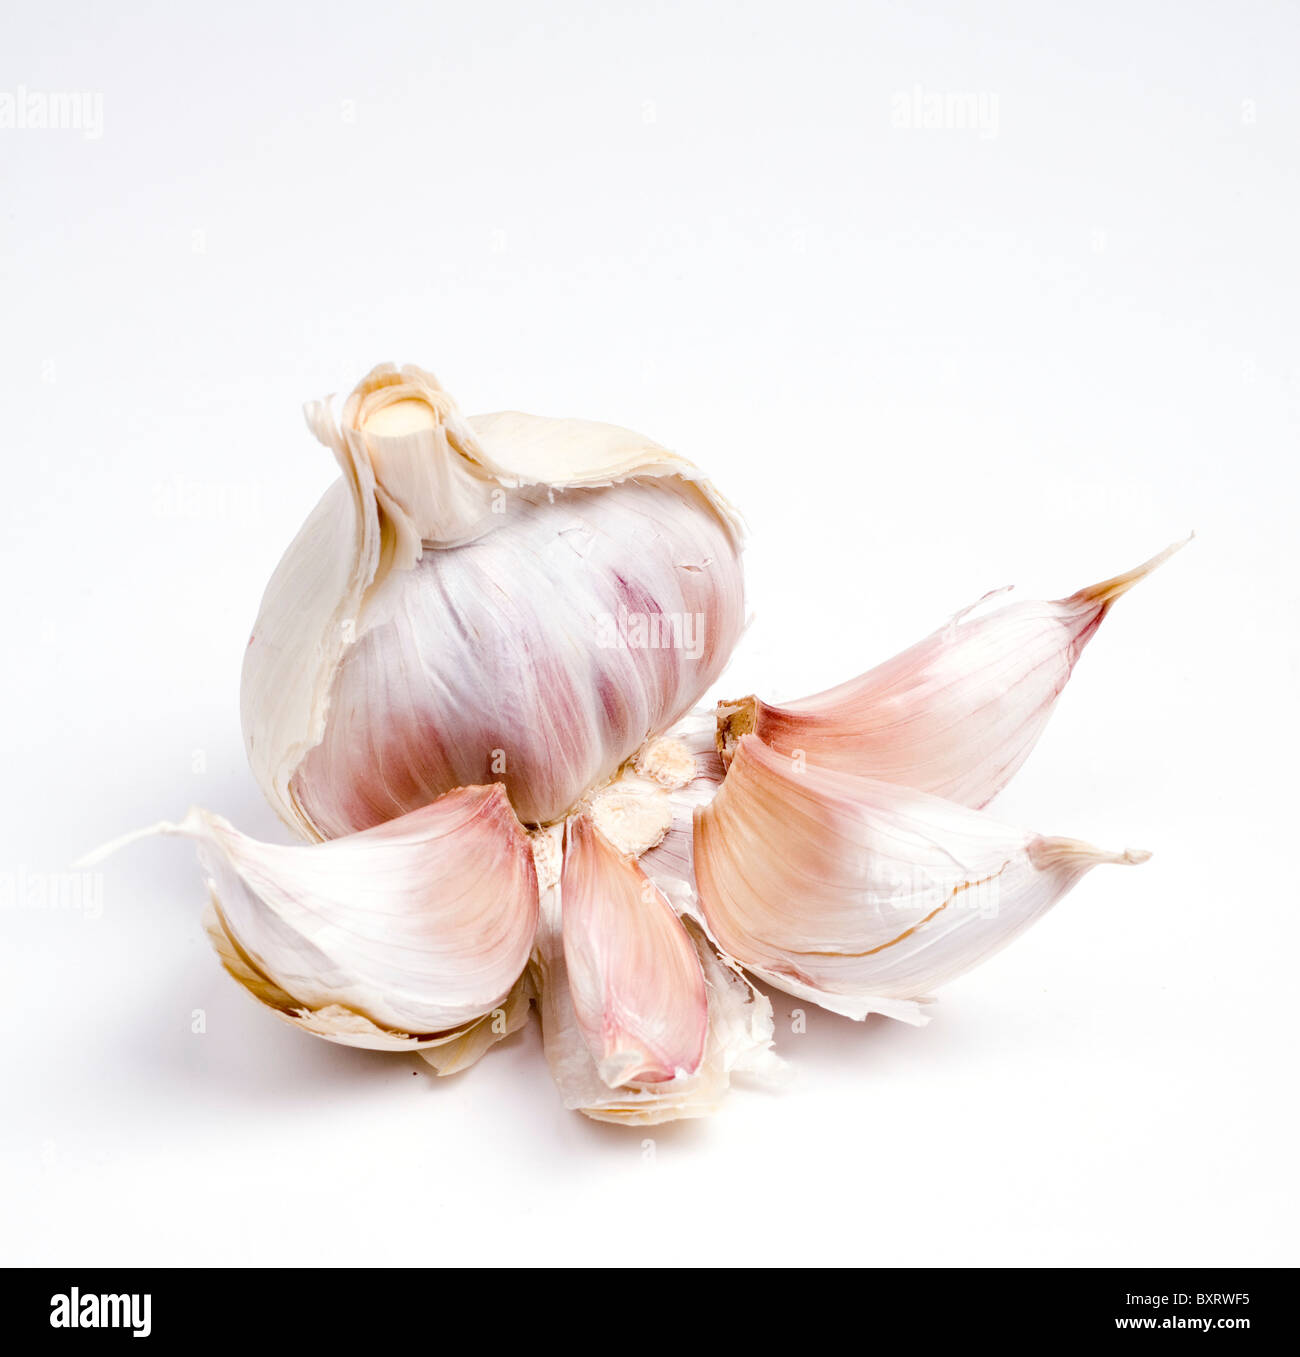 Garlic on white background, close-up Stock Photo